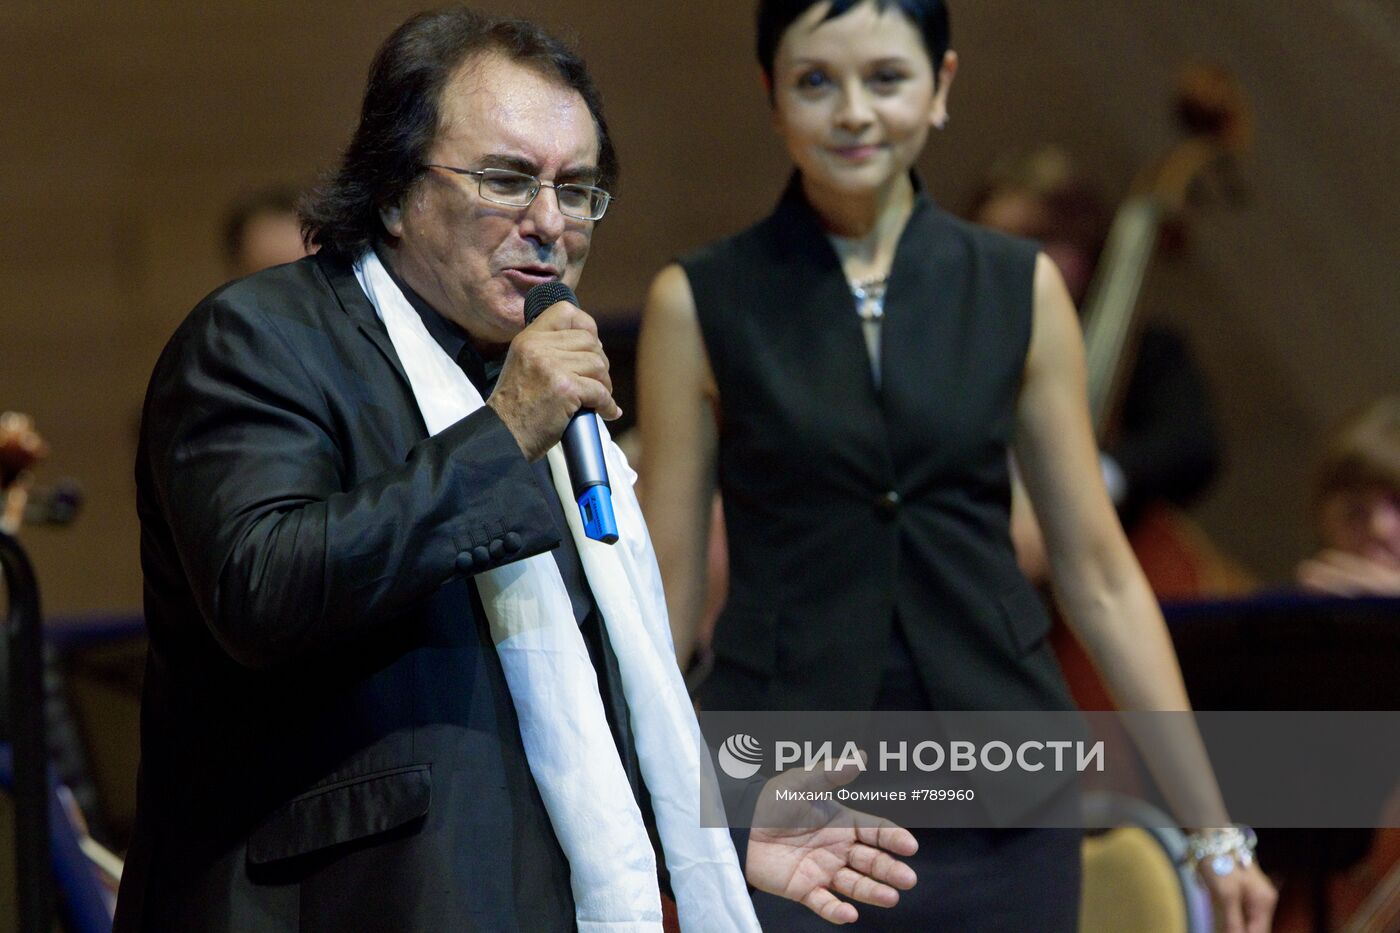 Концерт итальянского певца Аль Бано в Москве